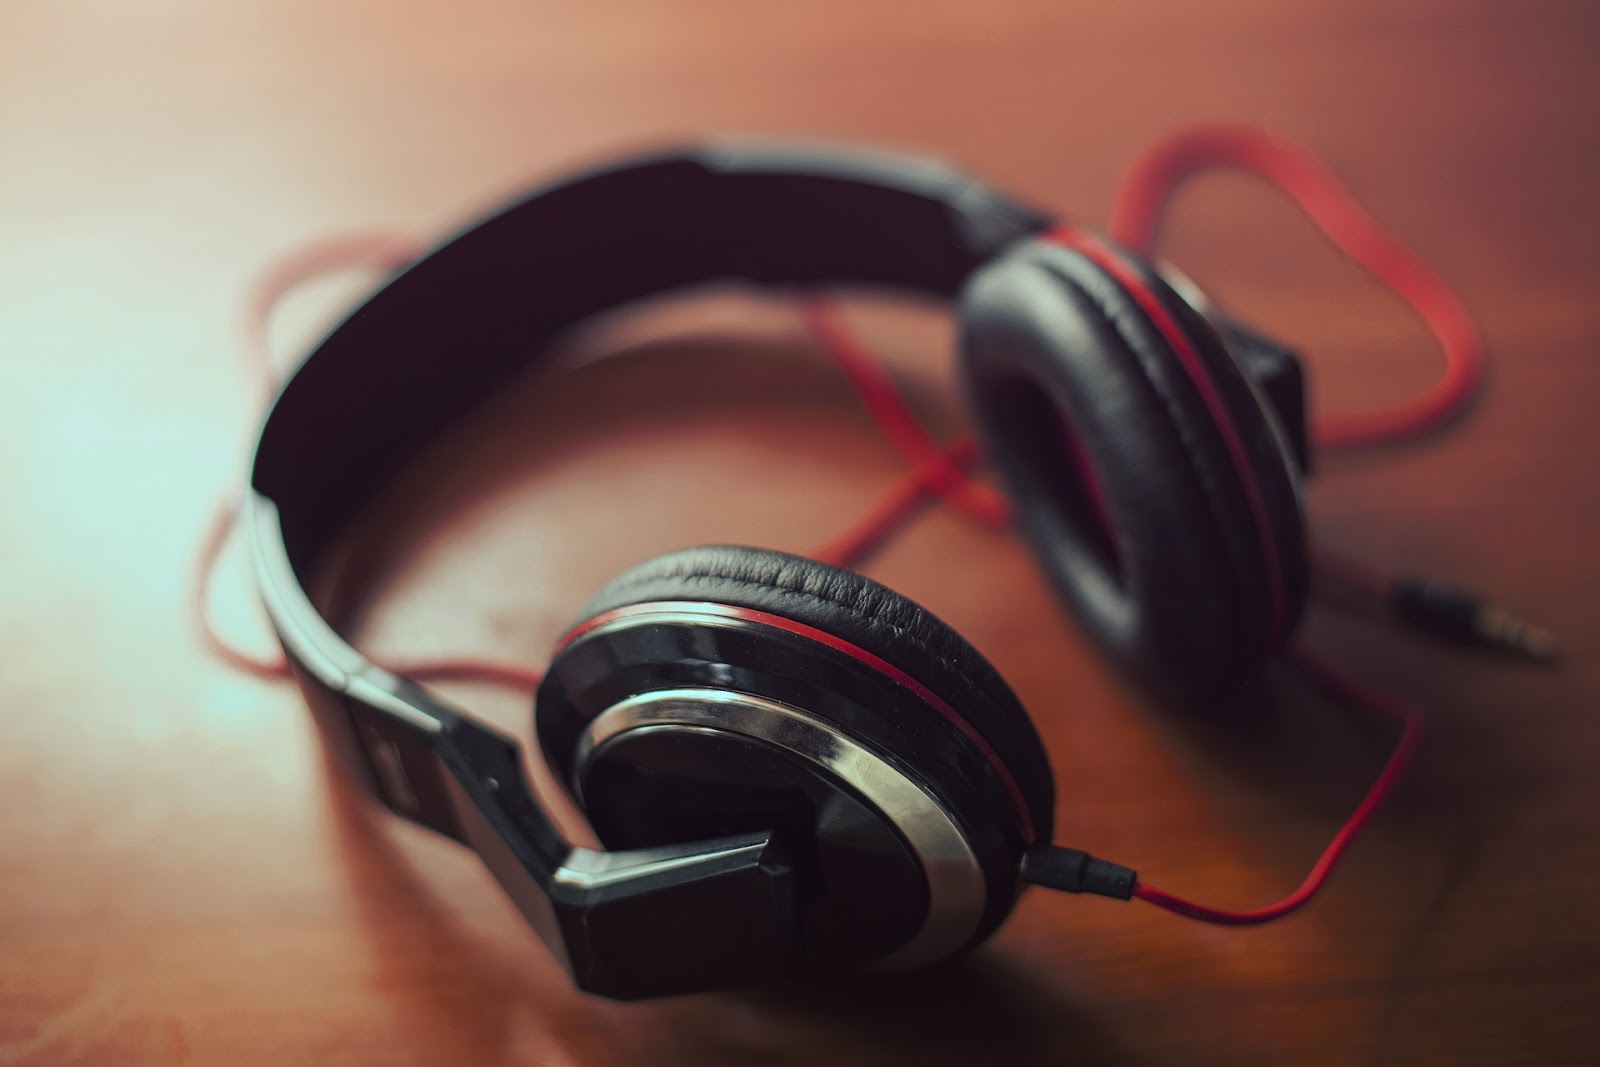 What are studio headphones?